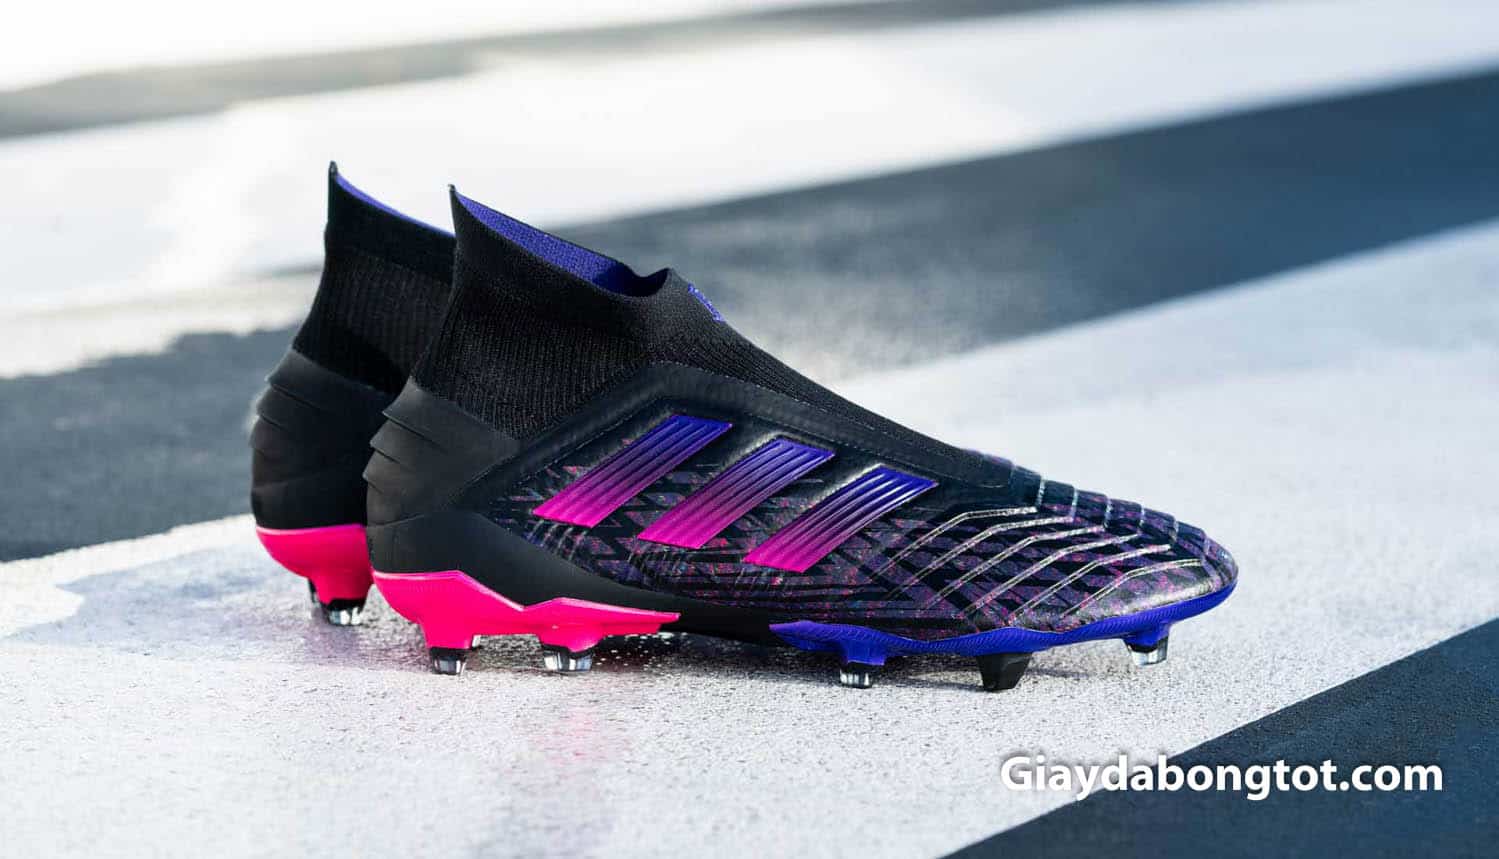 Giày đá bóng Adidas Predator 19+ Pogba với phối màu đen, hồng, tím đẹp mắt